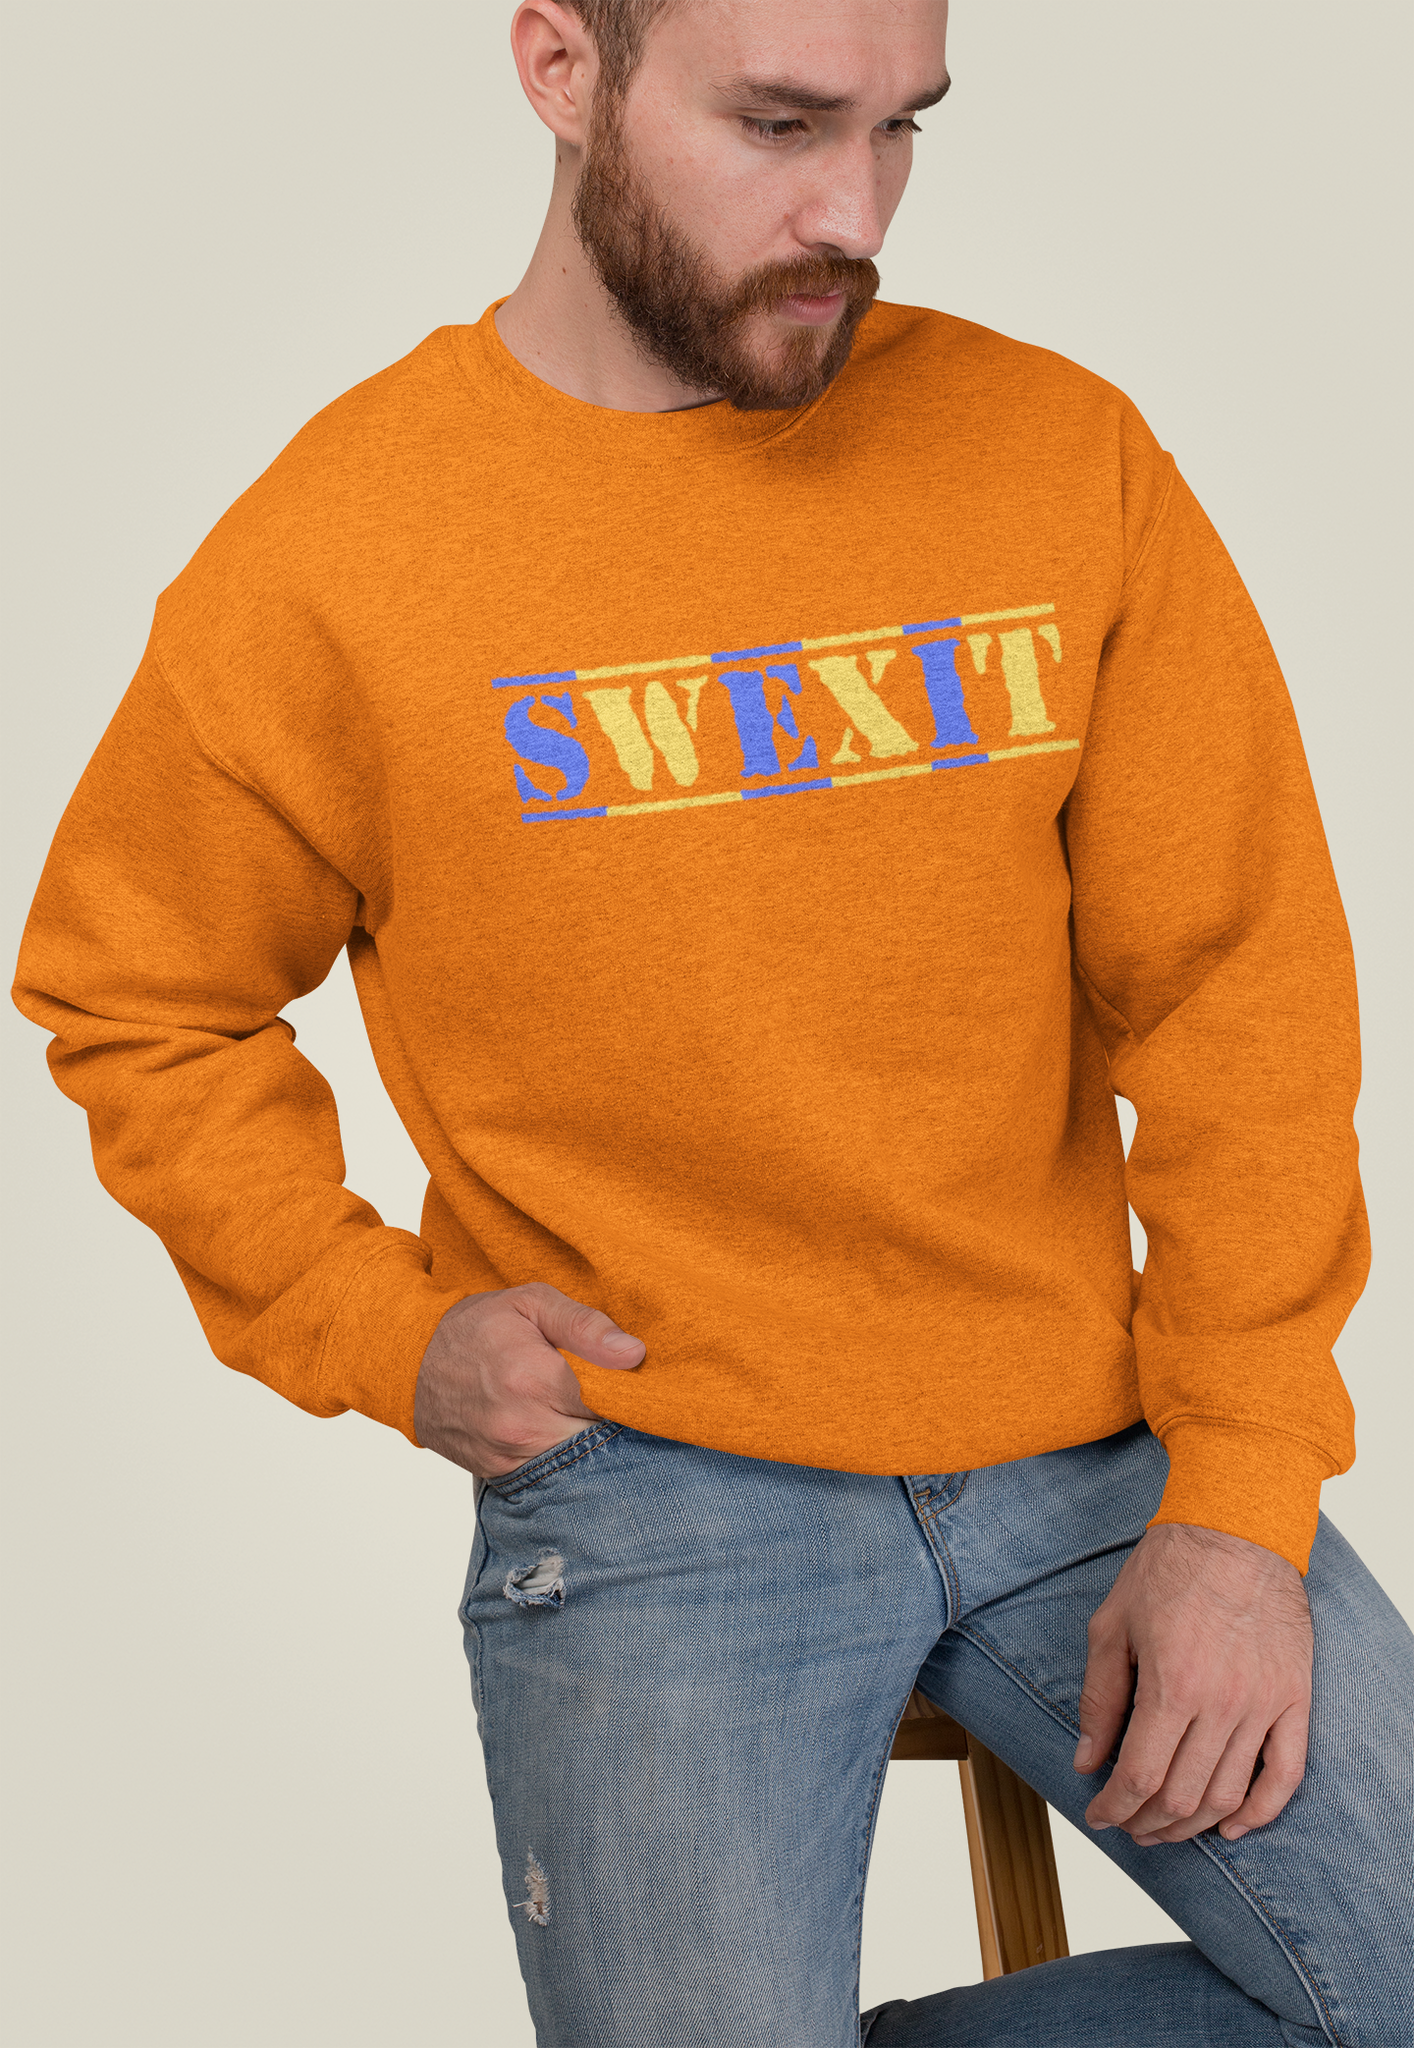 SWEXIT Sweatshirt Unisex